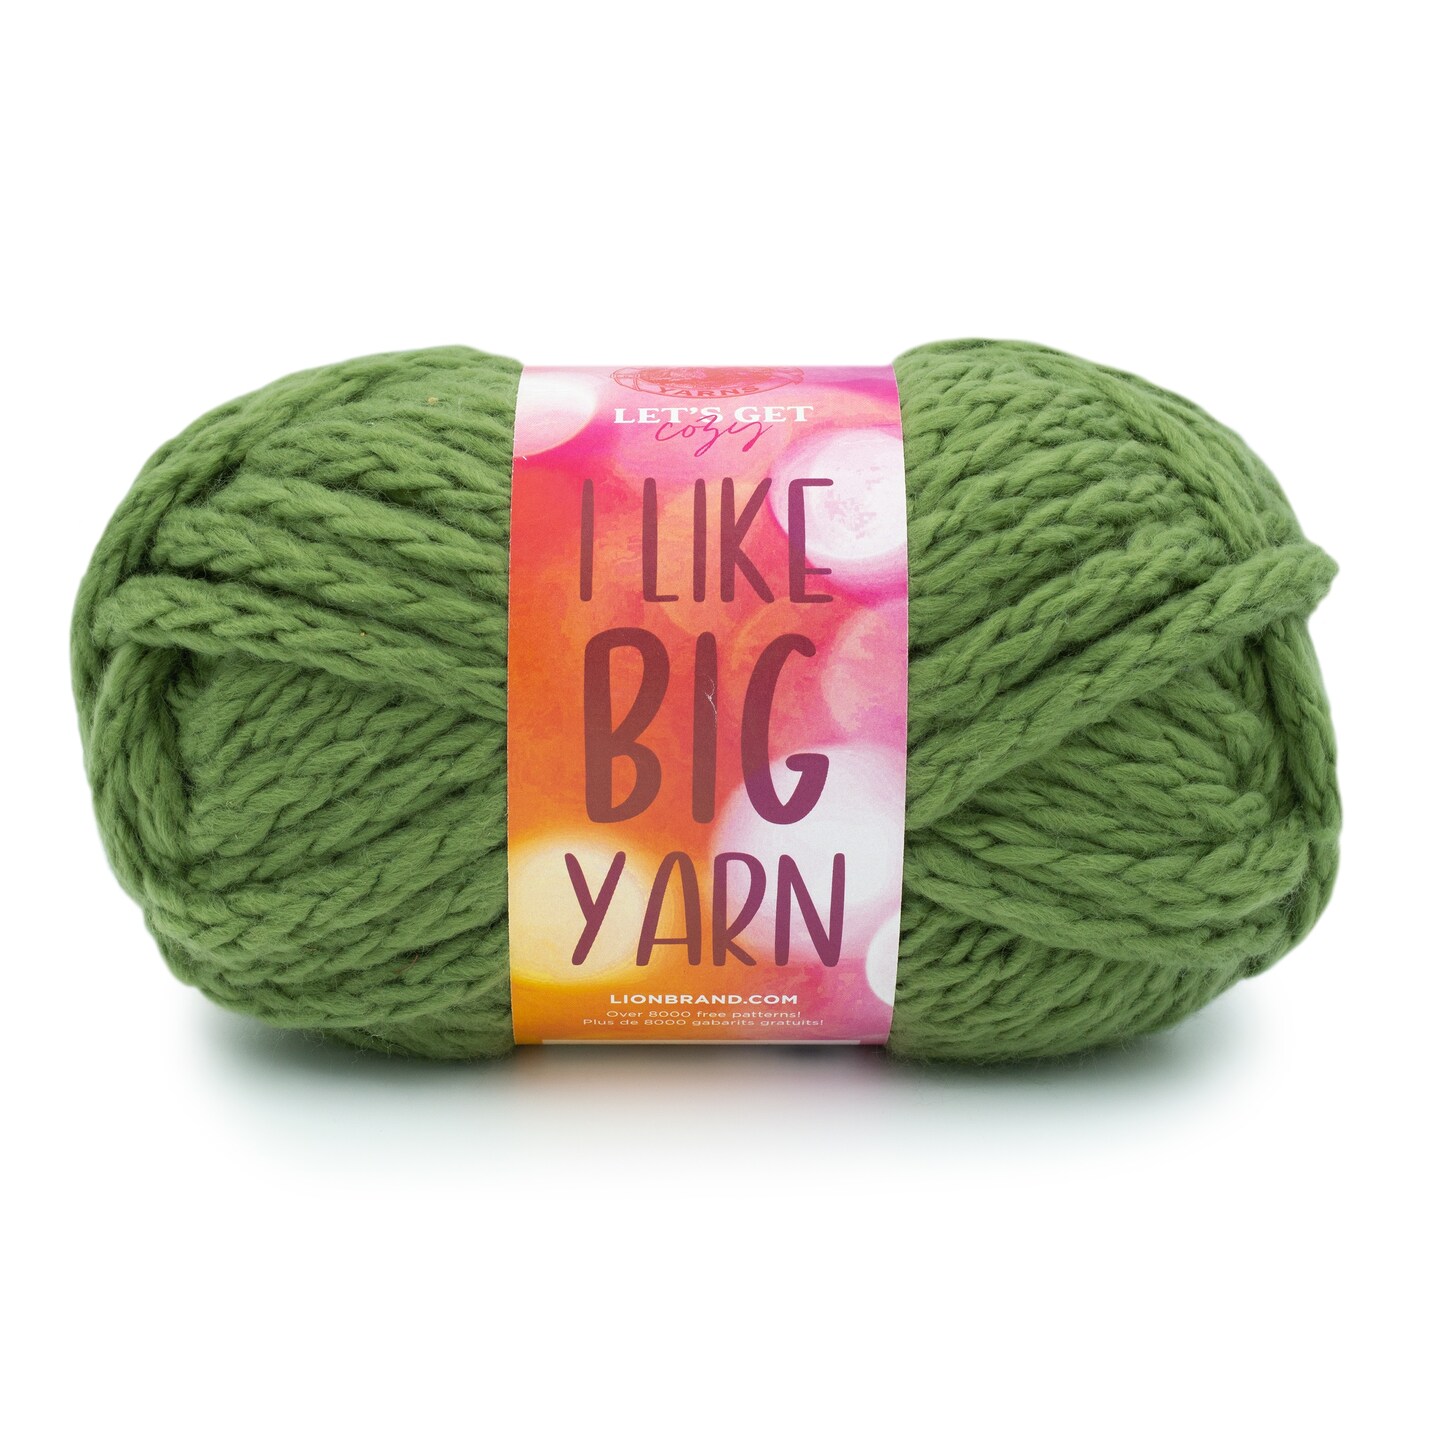 I Like Big Yarn